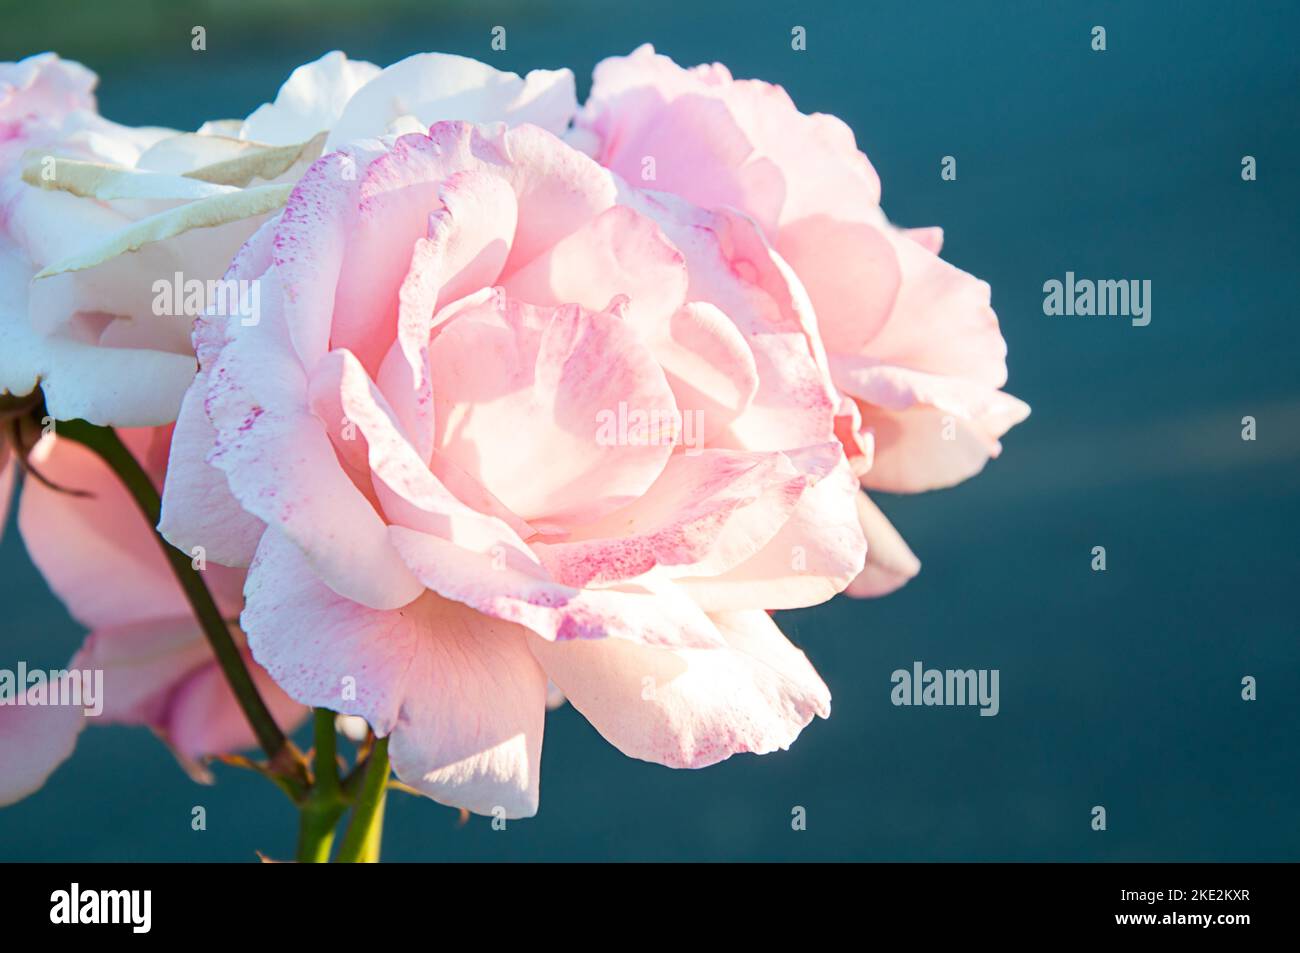 Rosa rose crescere primo piano in questa immagine della natura. Rosa e bianco gruppo di rose su uno sfondo blu scuro sfocato con luce naturale colpisce Foto Stock